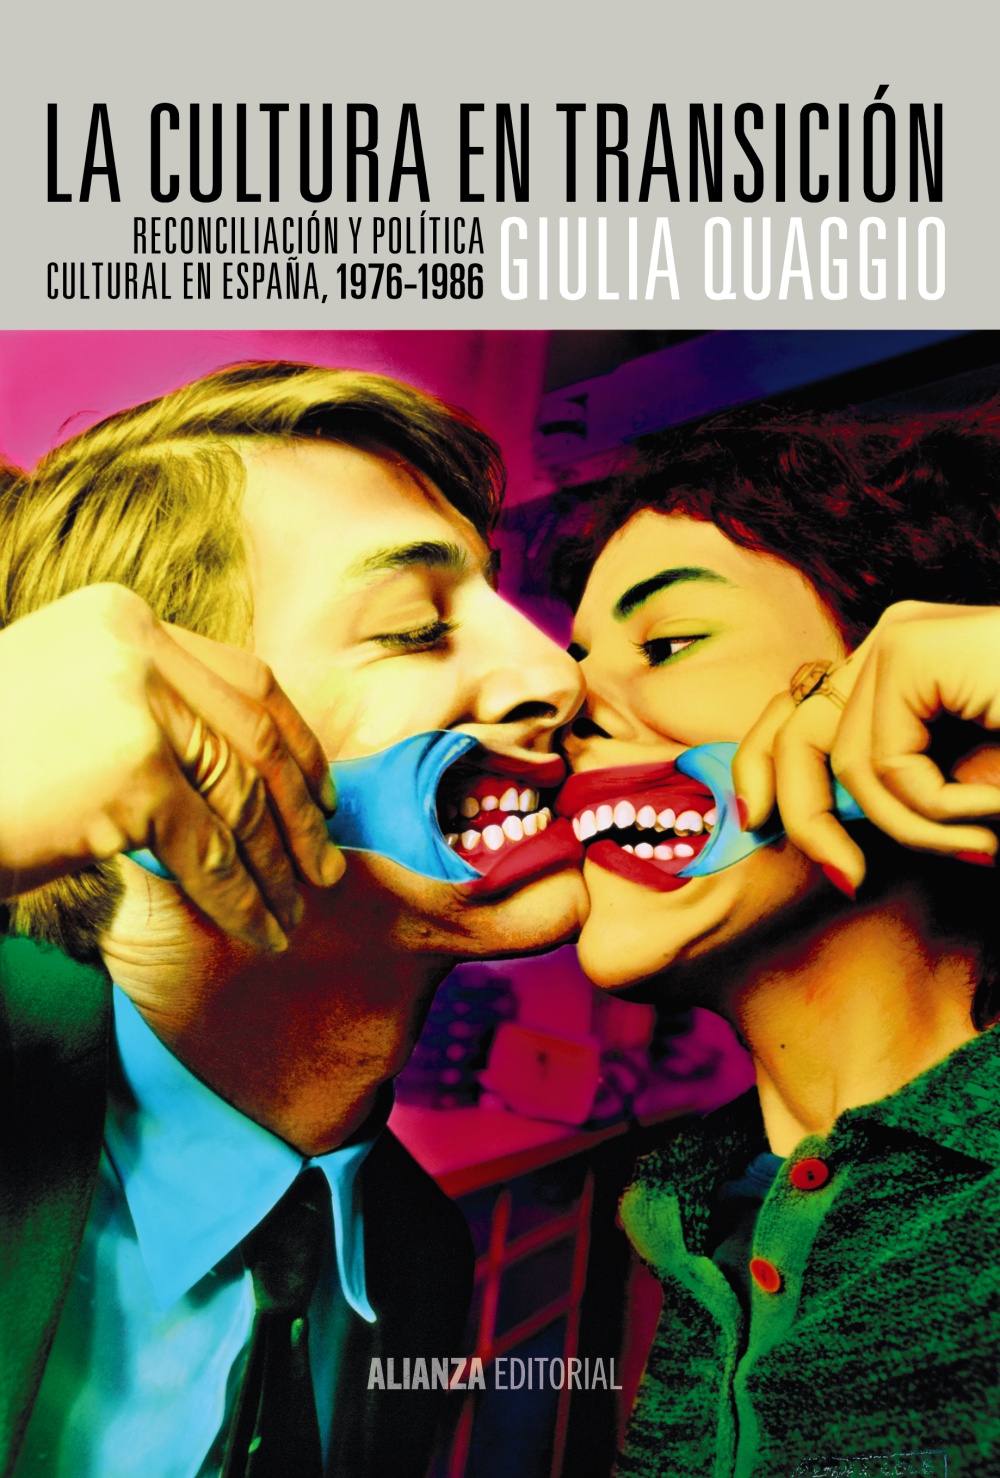 La cultura en transición: reconciliación y política cultural en España, 1976-1986